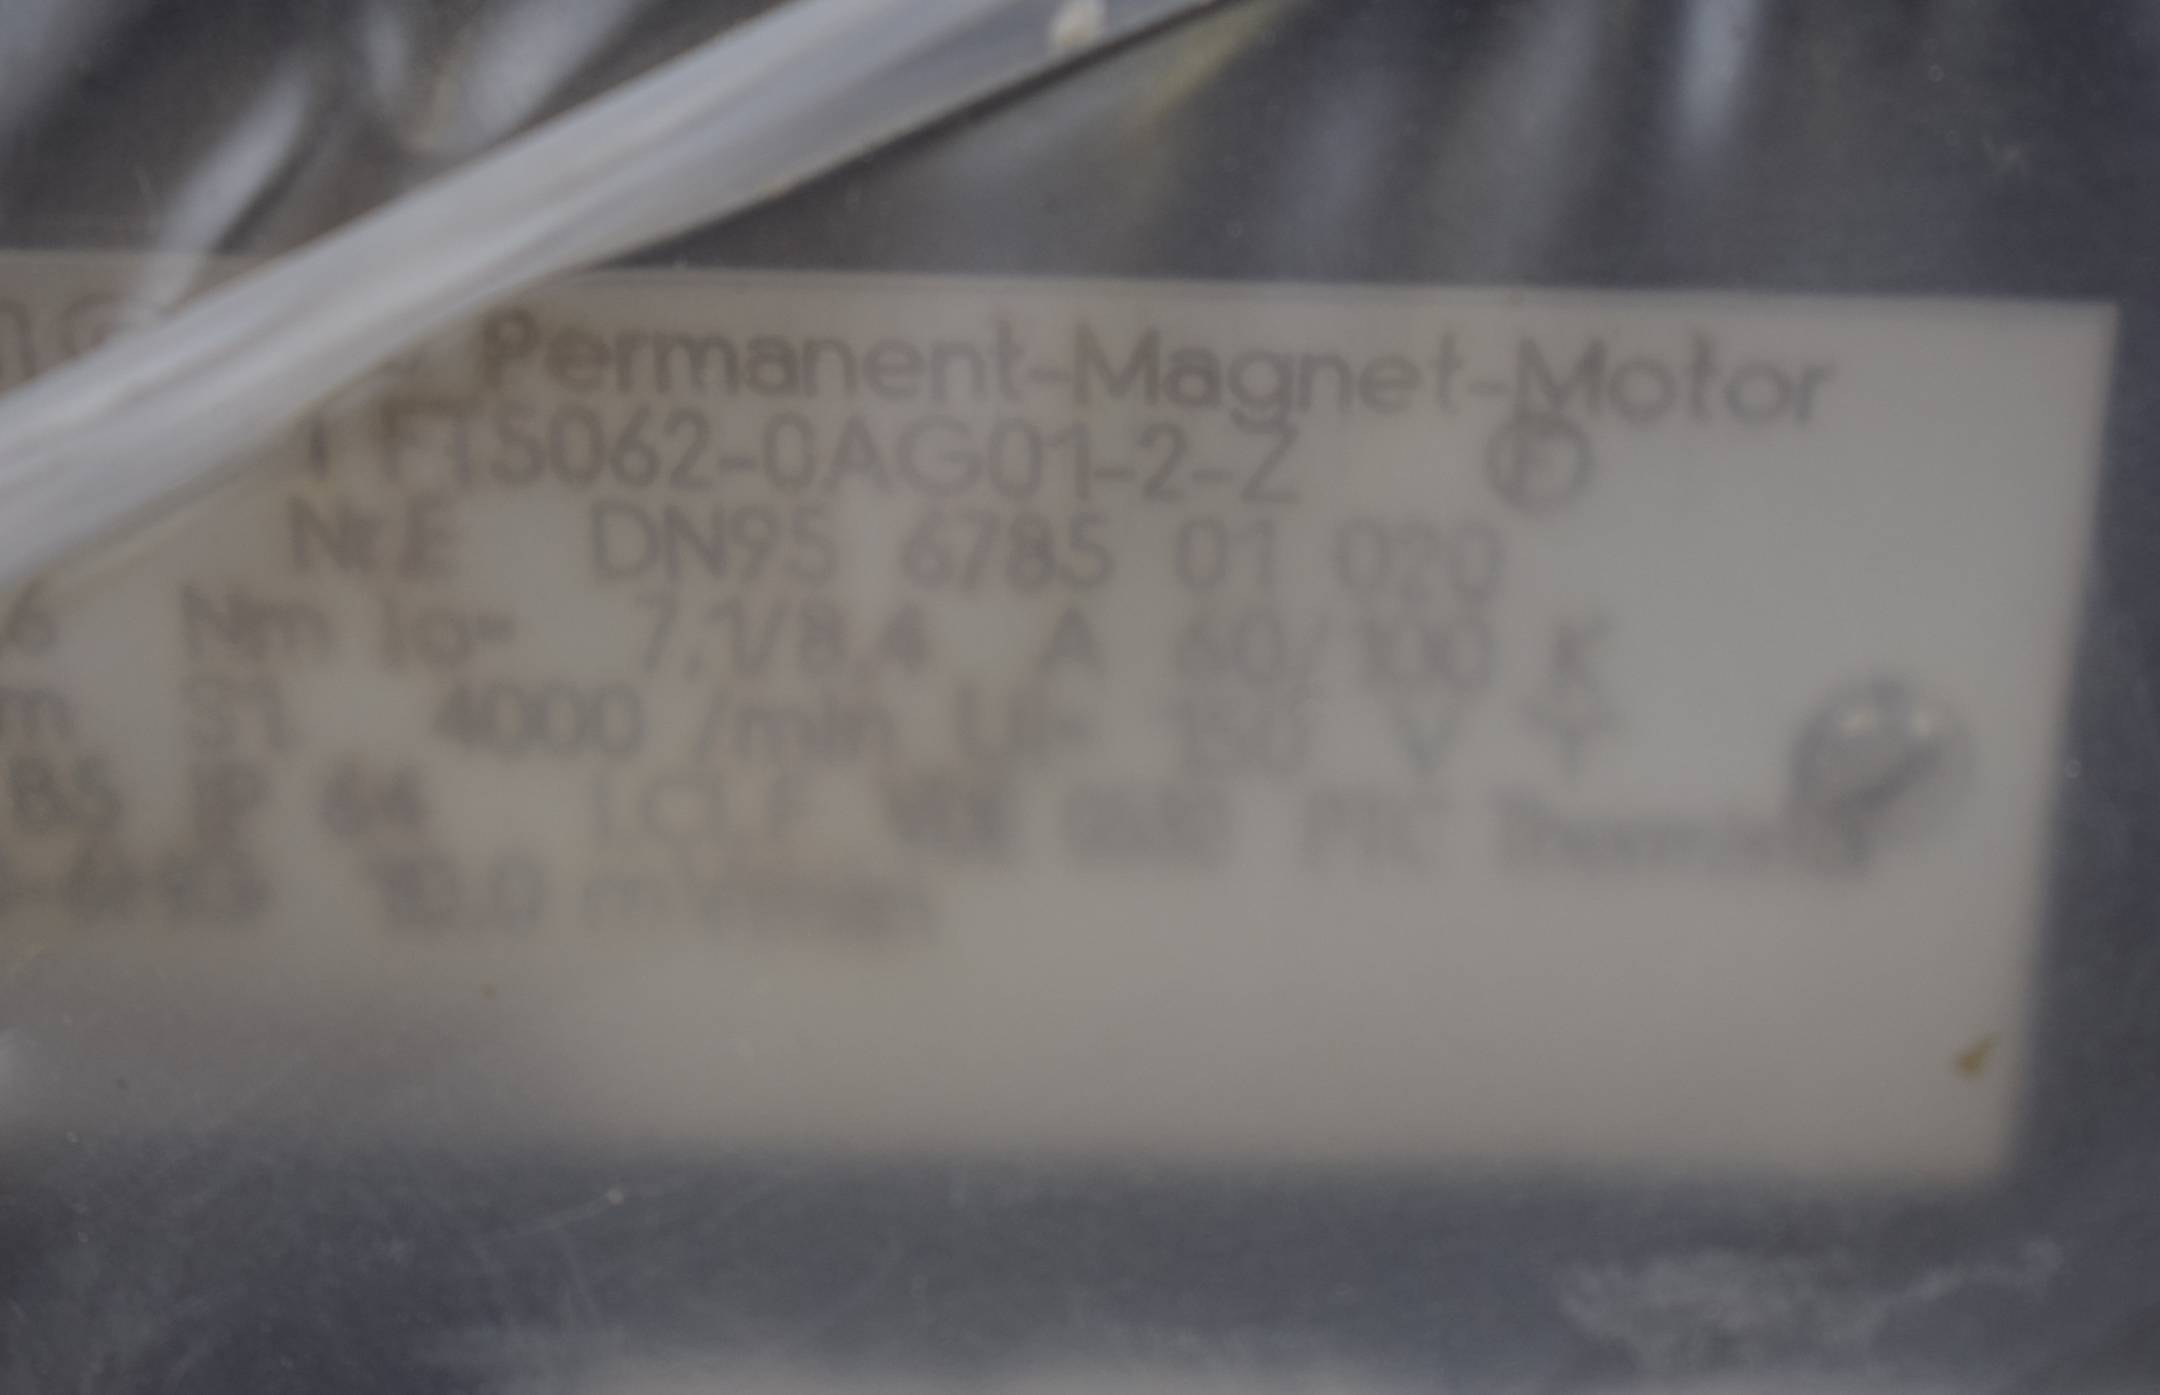 Siemens Permanent Magnet Motor 1FT5062-0AG01-2-Z 